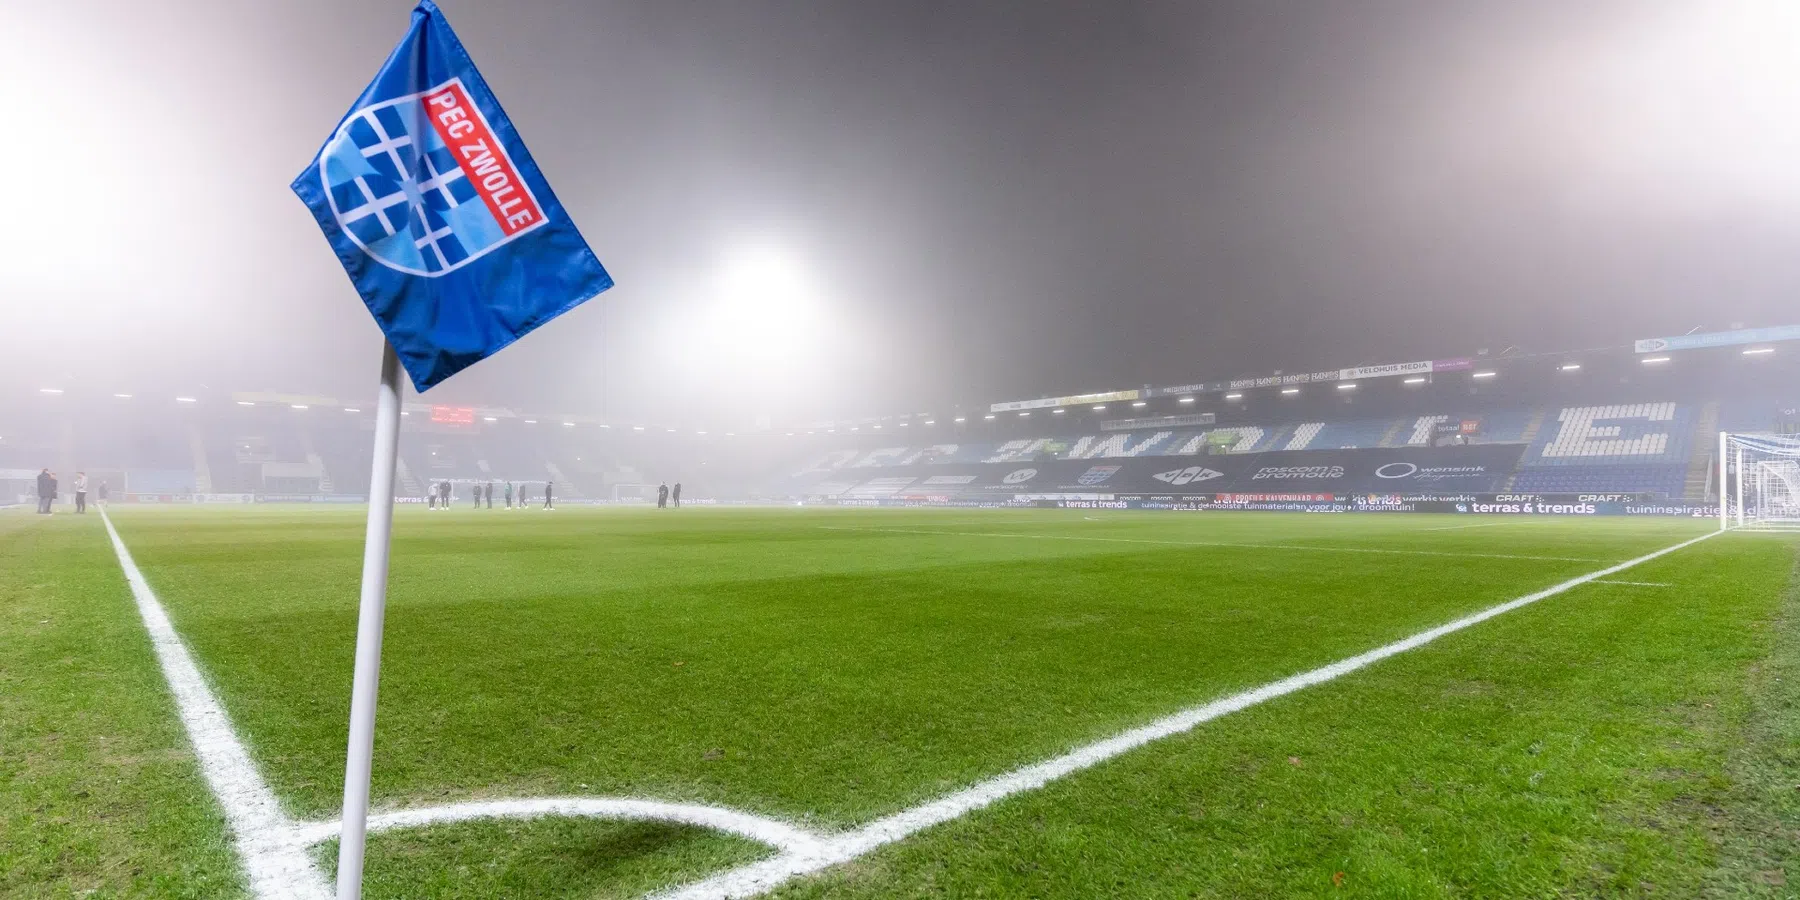 PEC Zwolle krijgt tik op de vingers van de KNVB na bijzonder lage score